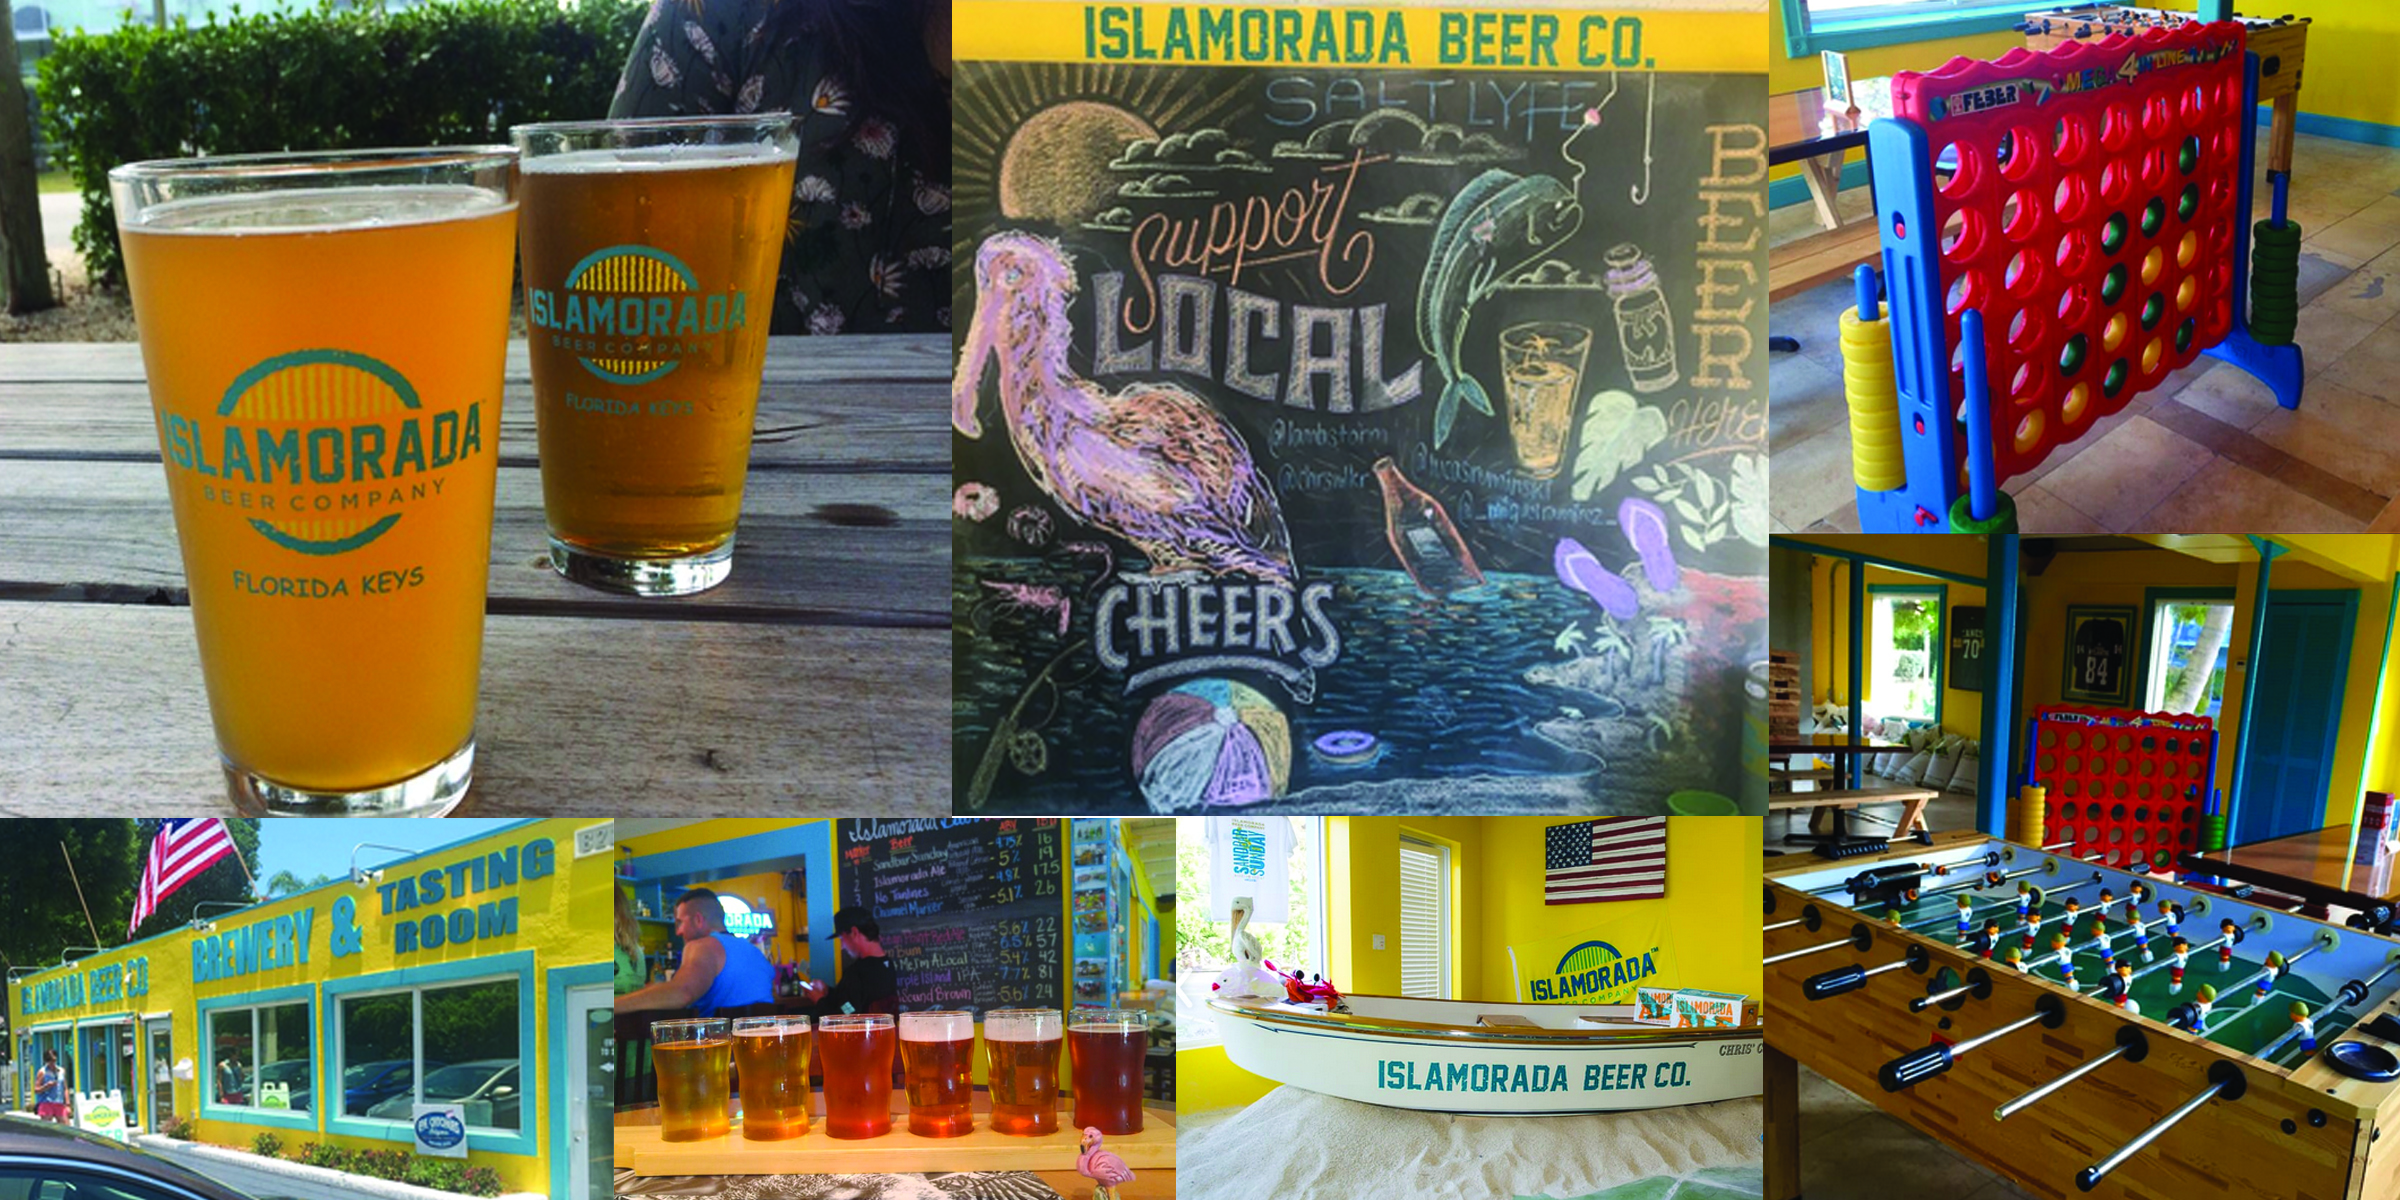 The Islamorada Beer Company